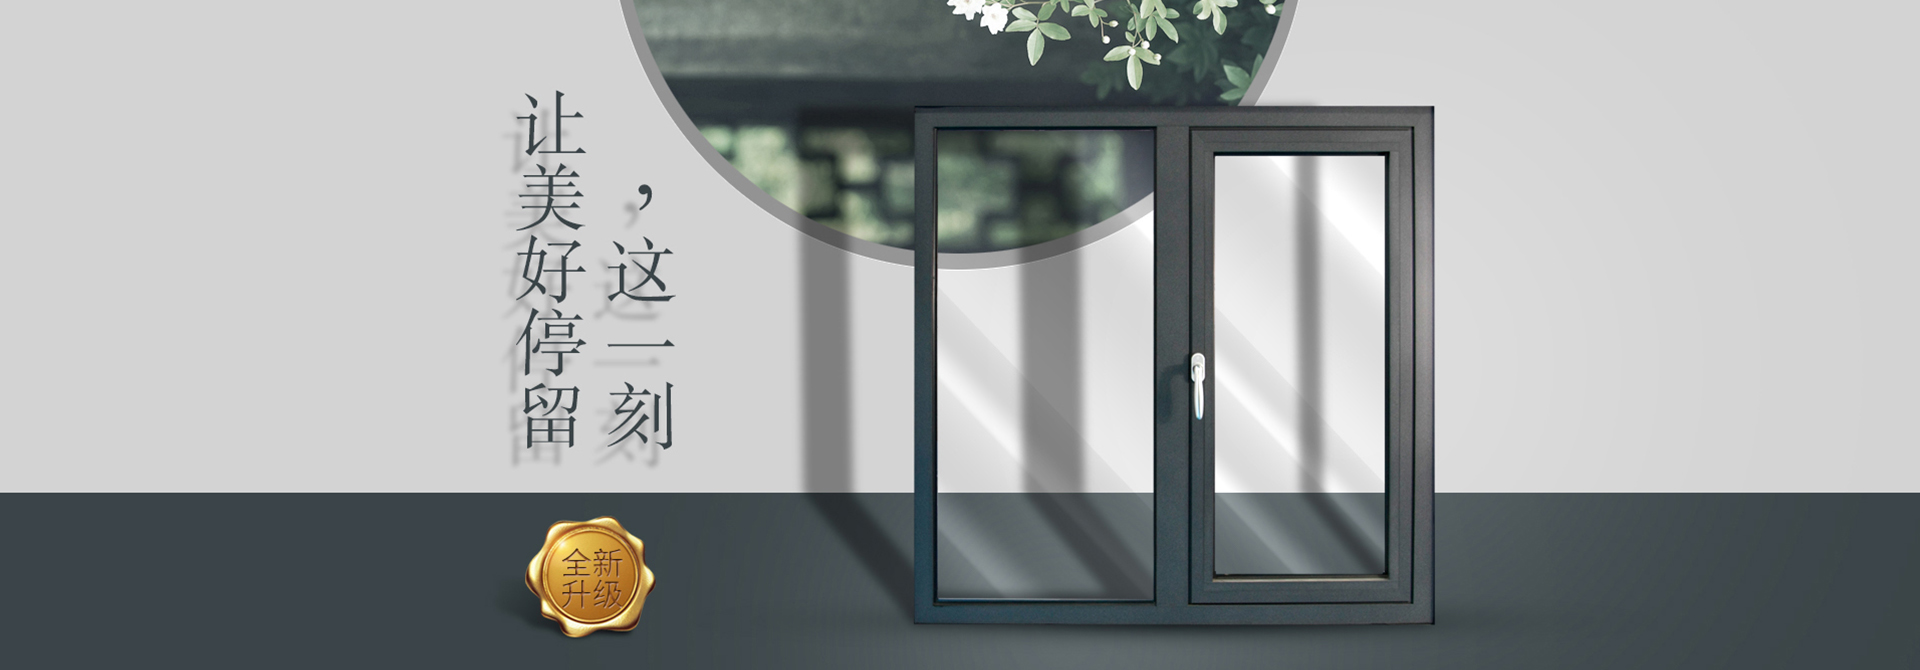 濟南芭乐下载app最新版下载鋁門窗